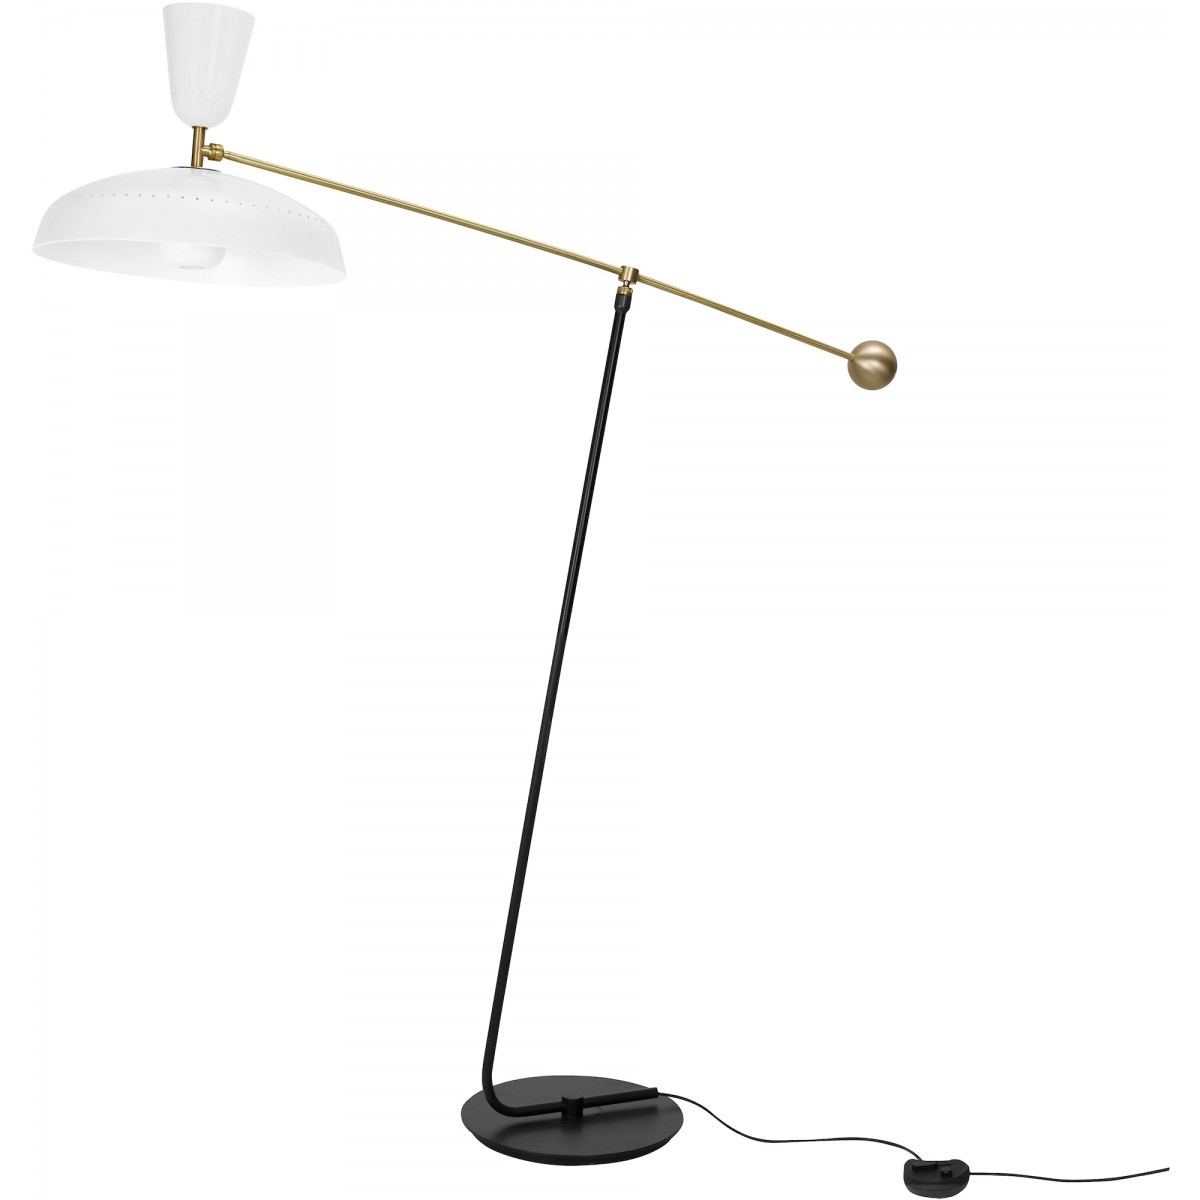 H120 cm – White – G1 Floor lamp